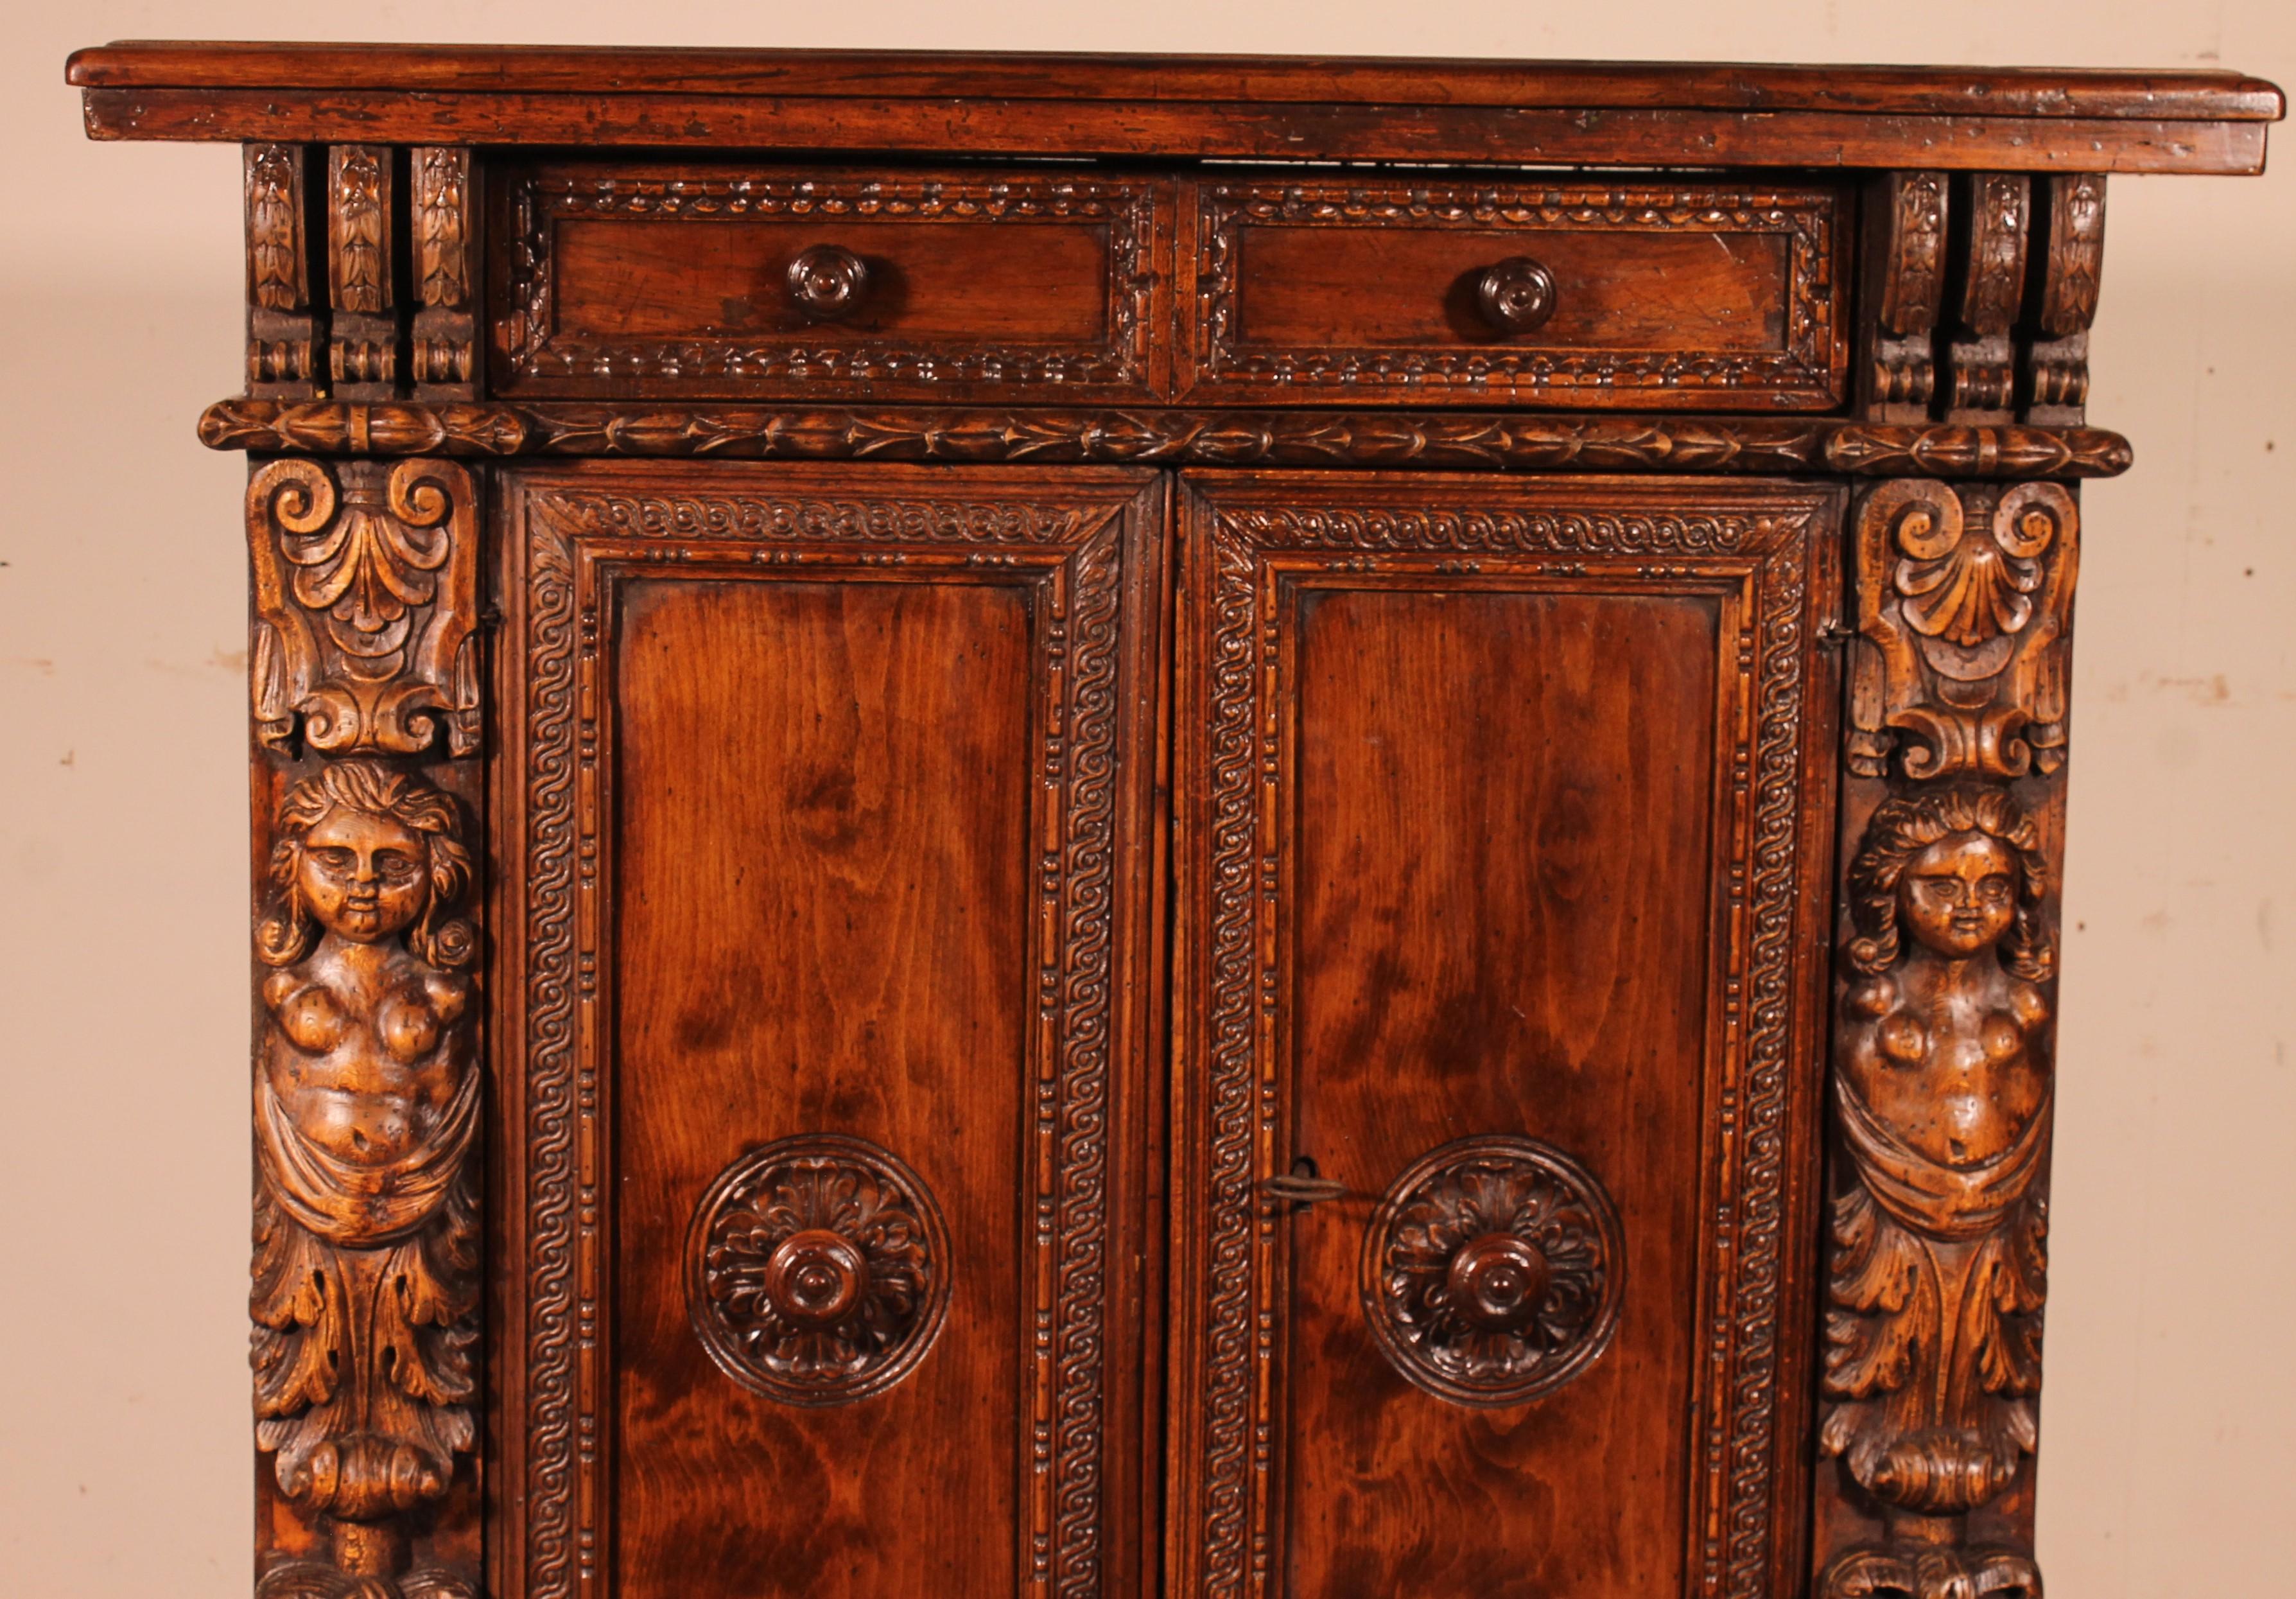 Italienisches Buffet aus Nussbaum und Obstholz aus dem 17. Jahrhundert, das sich mit zwei Türen öffnet und eine Schublade hat

Sehr schönes kleines Modell mit einer hervorragenden Oberseite mit einer schönen Patina und einer schönen Dicke
Die beiden